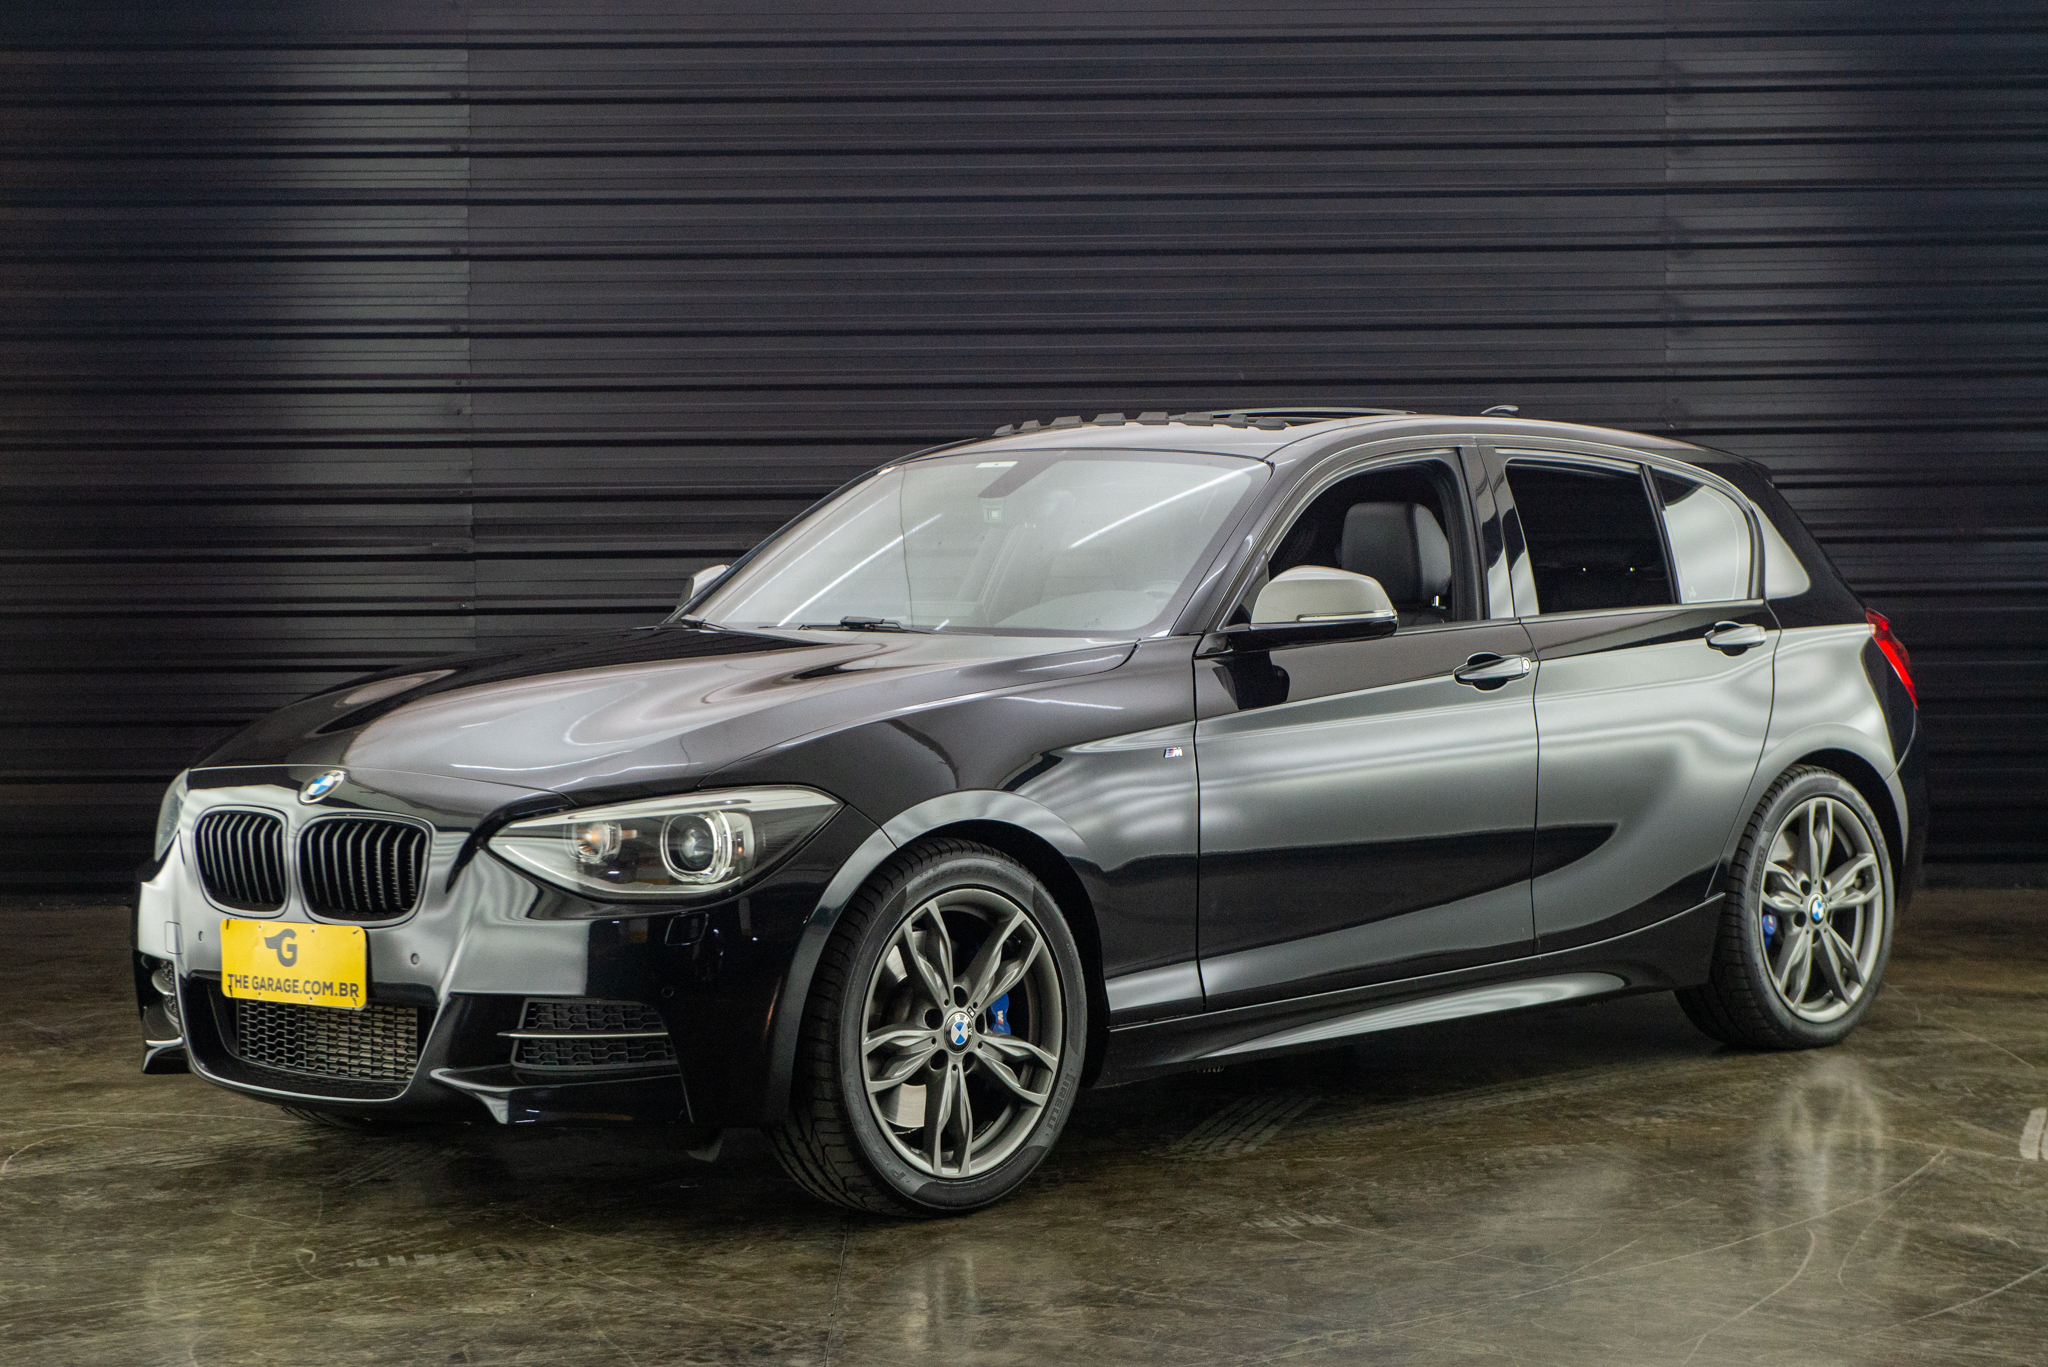 2014 BMW 135i a venda the garage